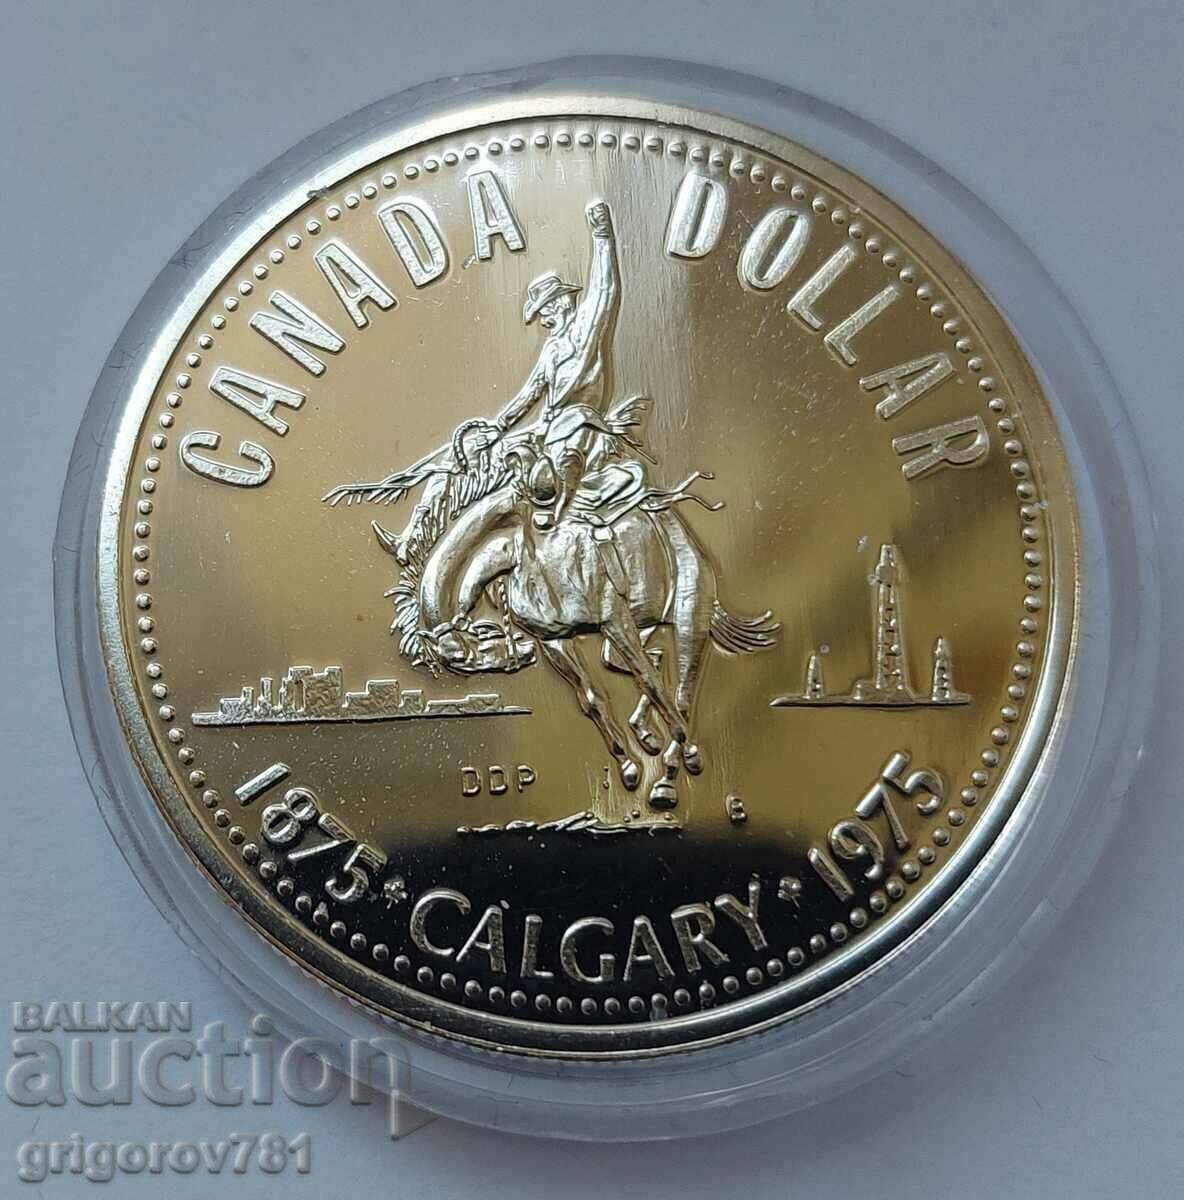 1 dollar silver Canada 1975 - silver coin